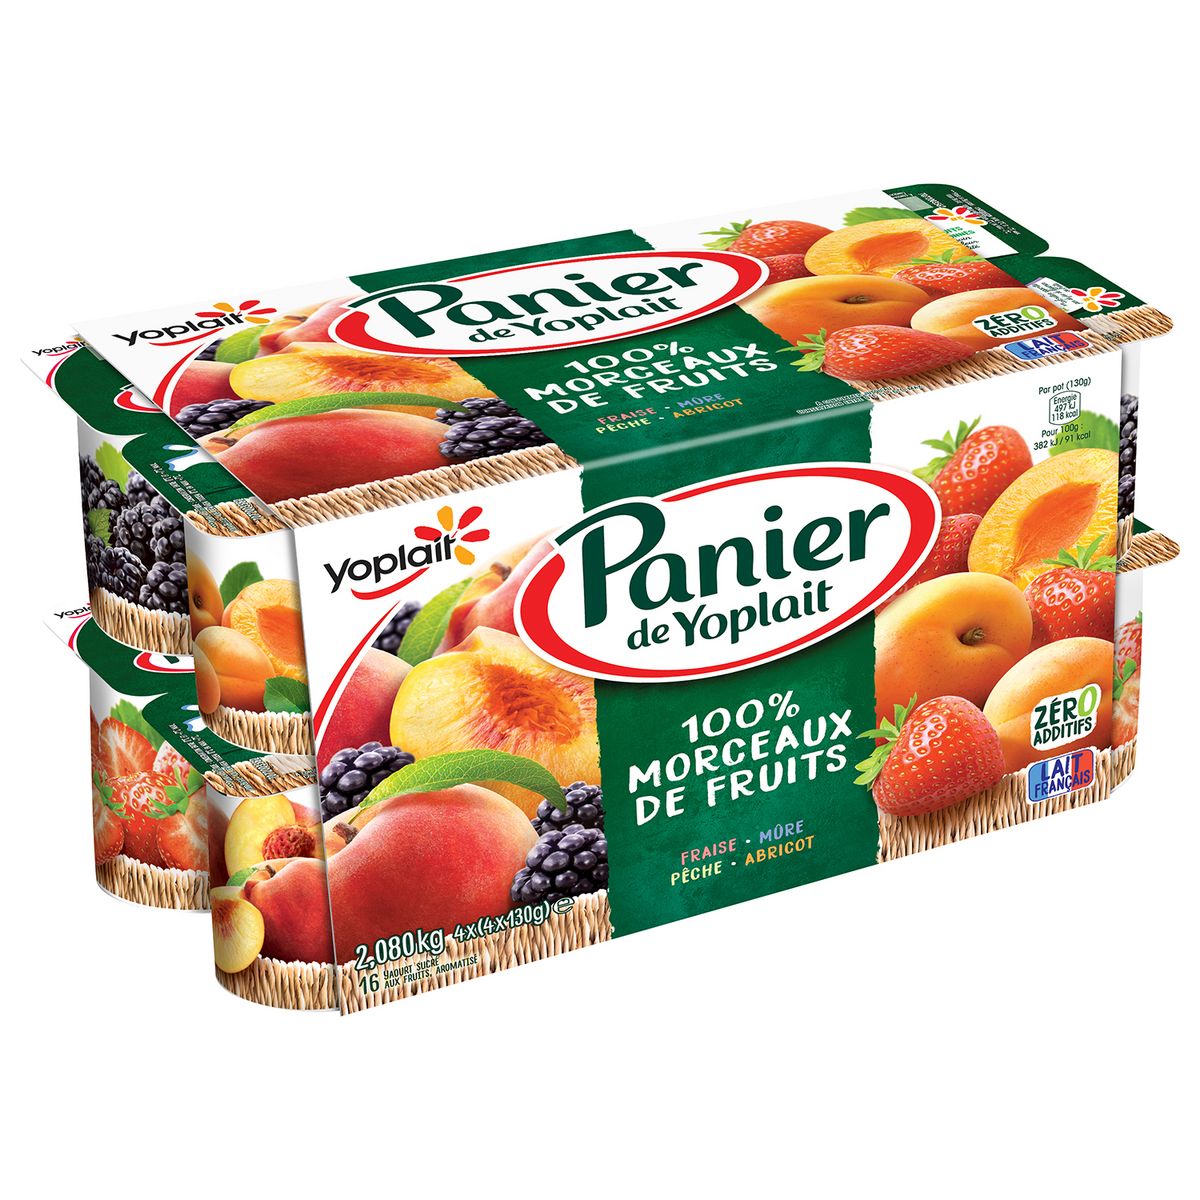 PANIER DE YOPLAIT Yaourt 100% morceaux de fruits fraise cerise pêche abricot 16x130g